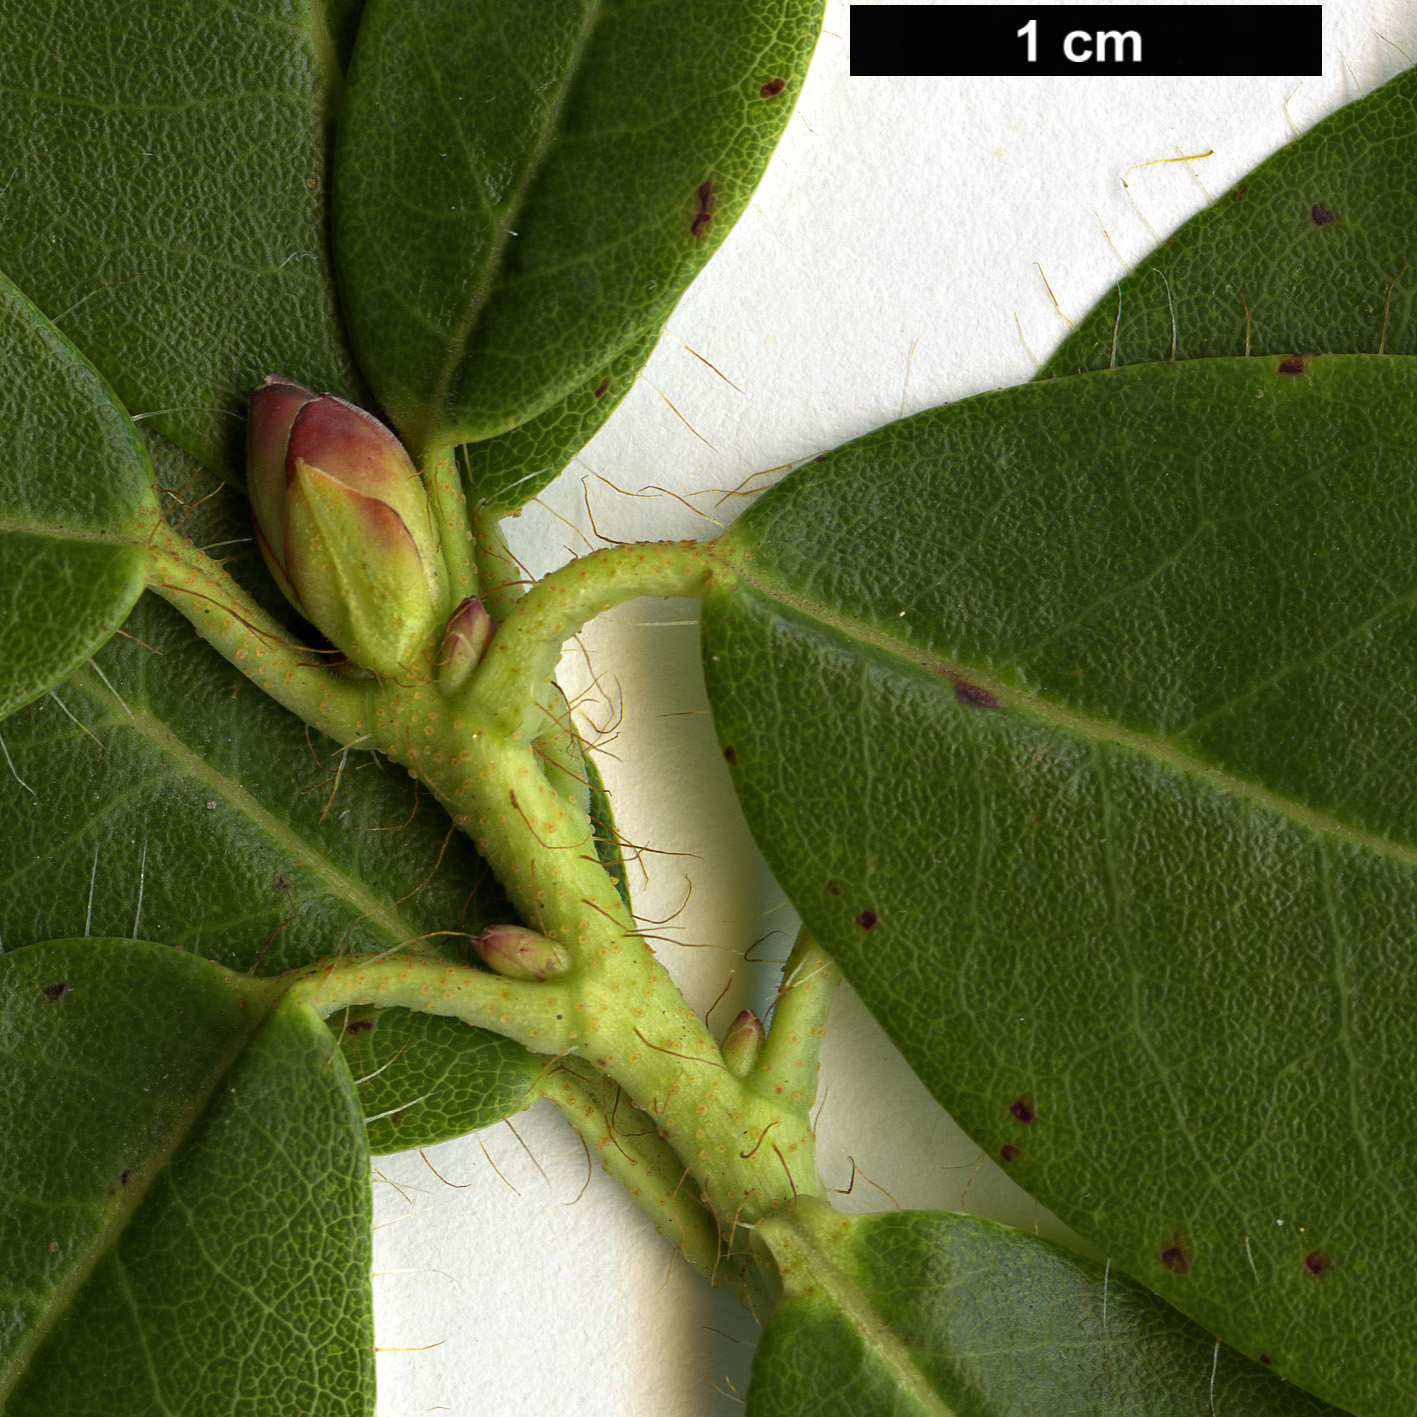 High resolution image: Family: Ericaceae - Genus: Rhododendron - Taxon: mekongense - SpeciesSub: var. mekongense